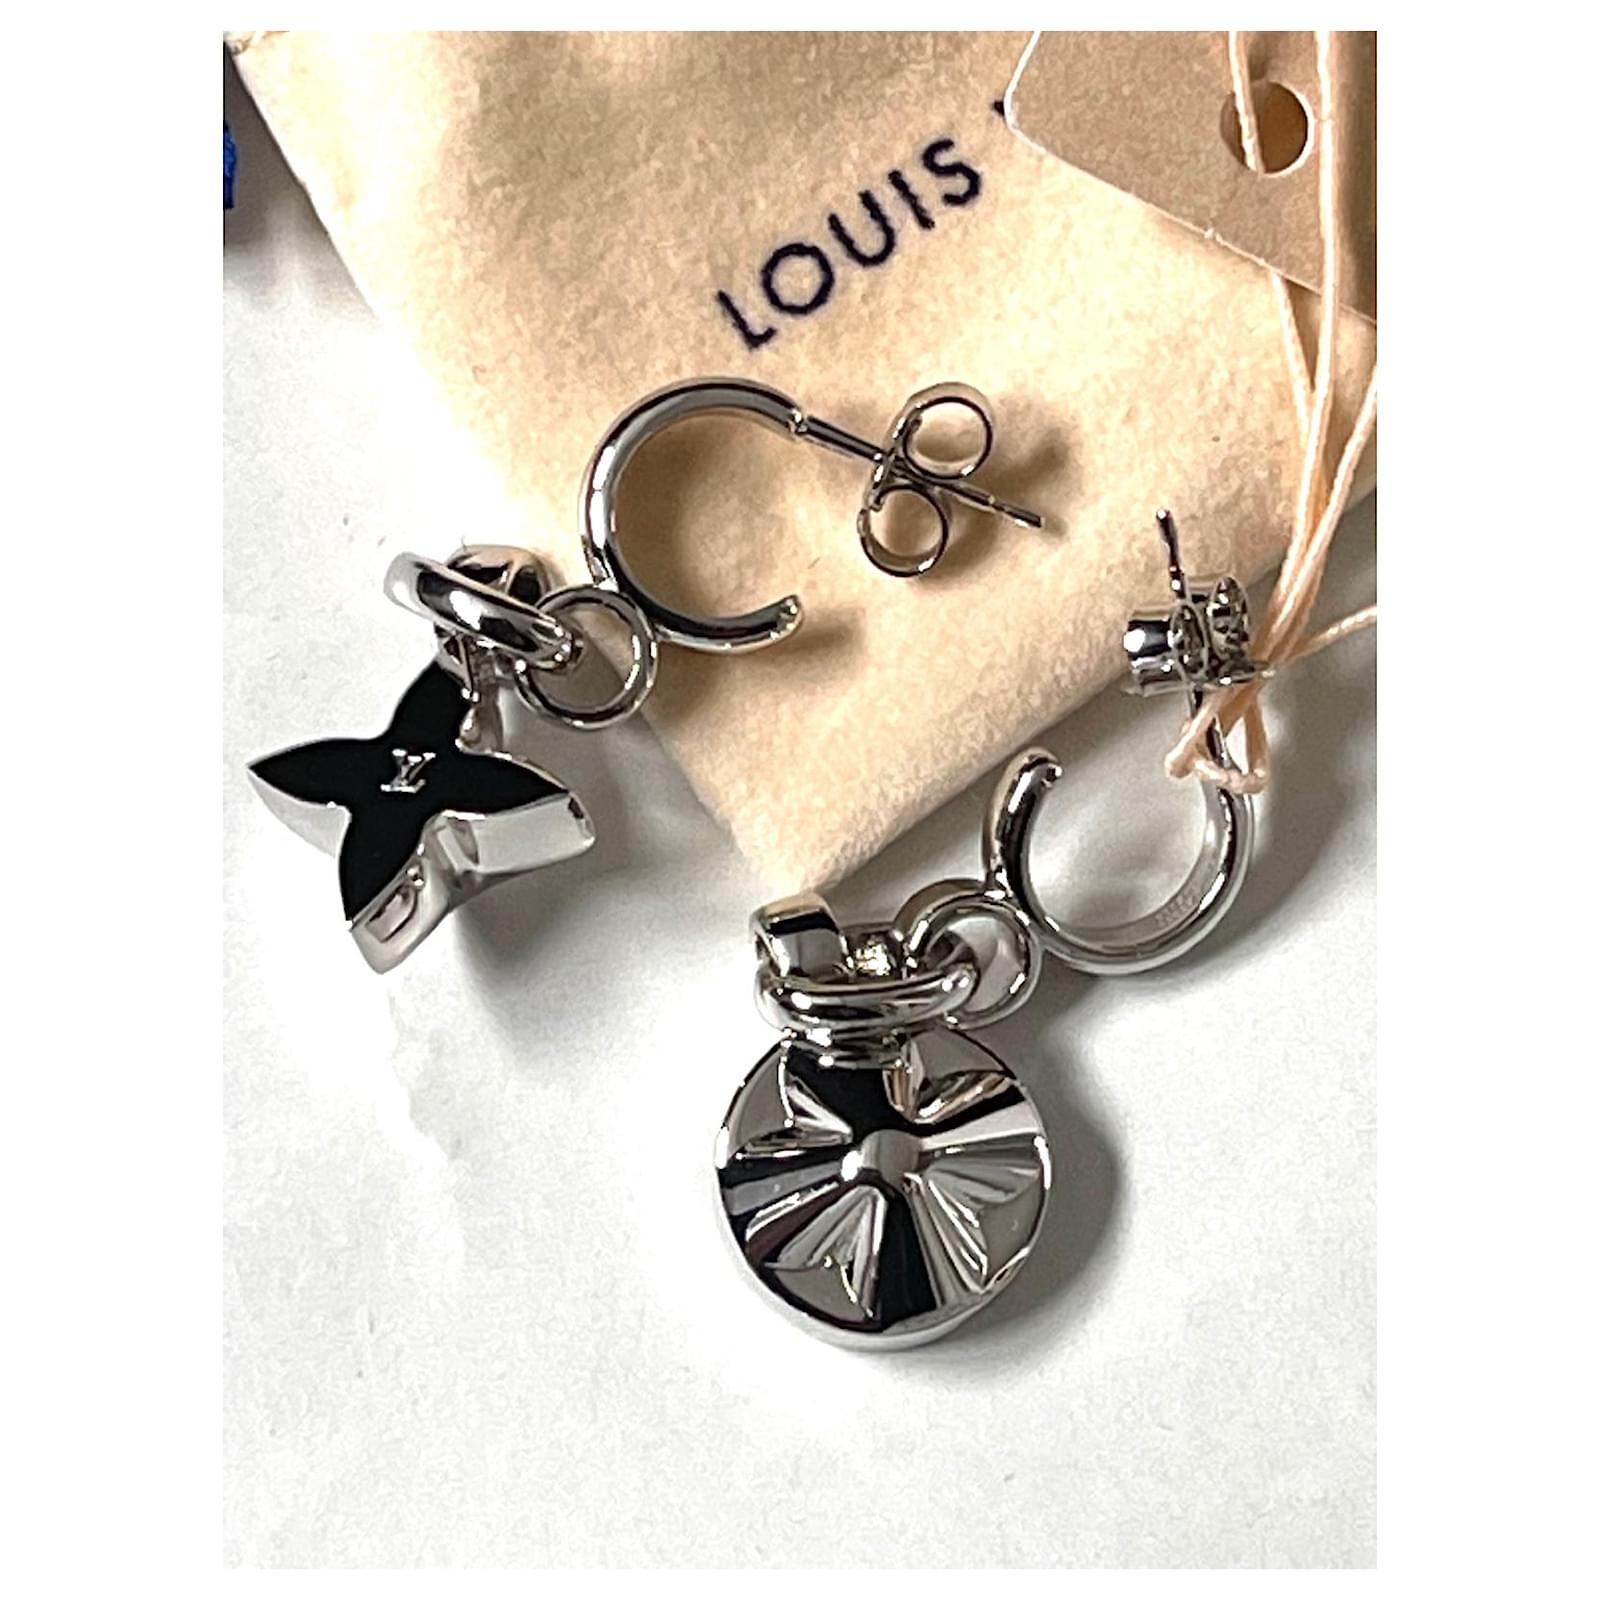 My Flower Chain Earrings S00 - Women - Fashion Jewelry